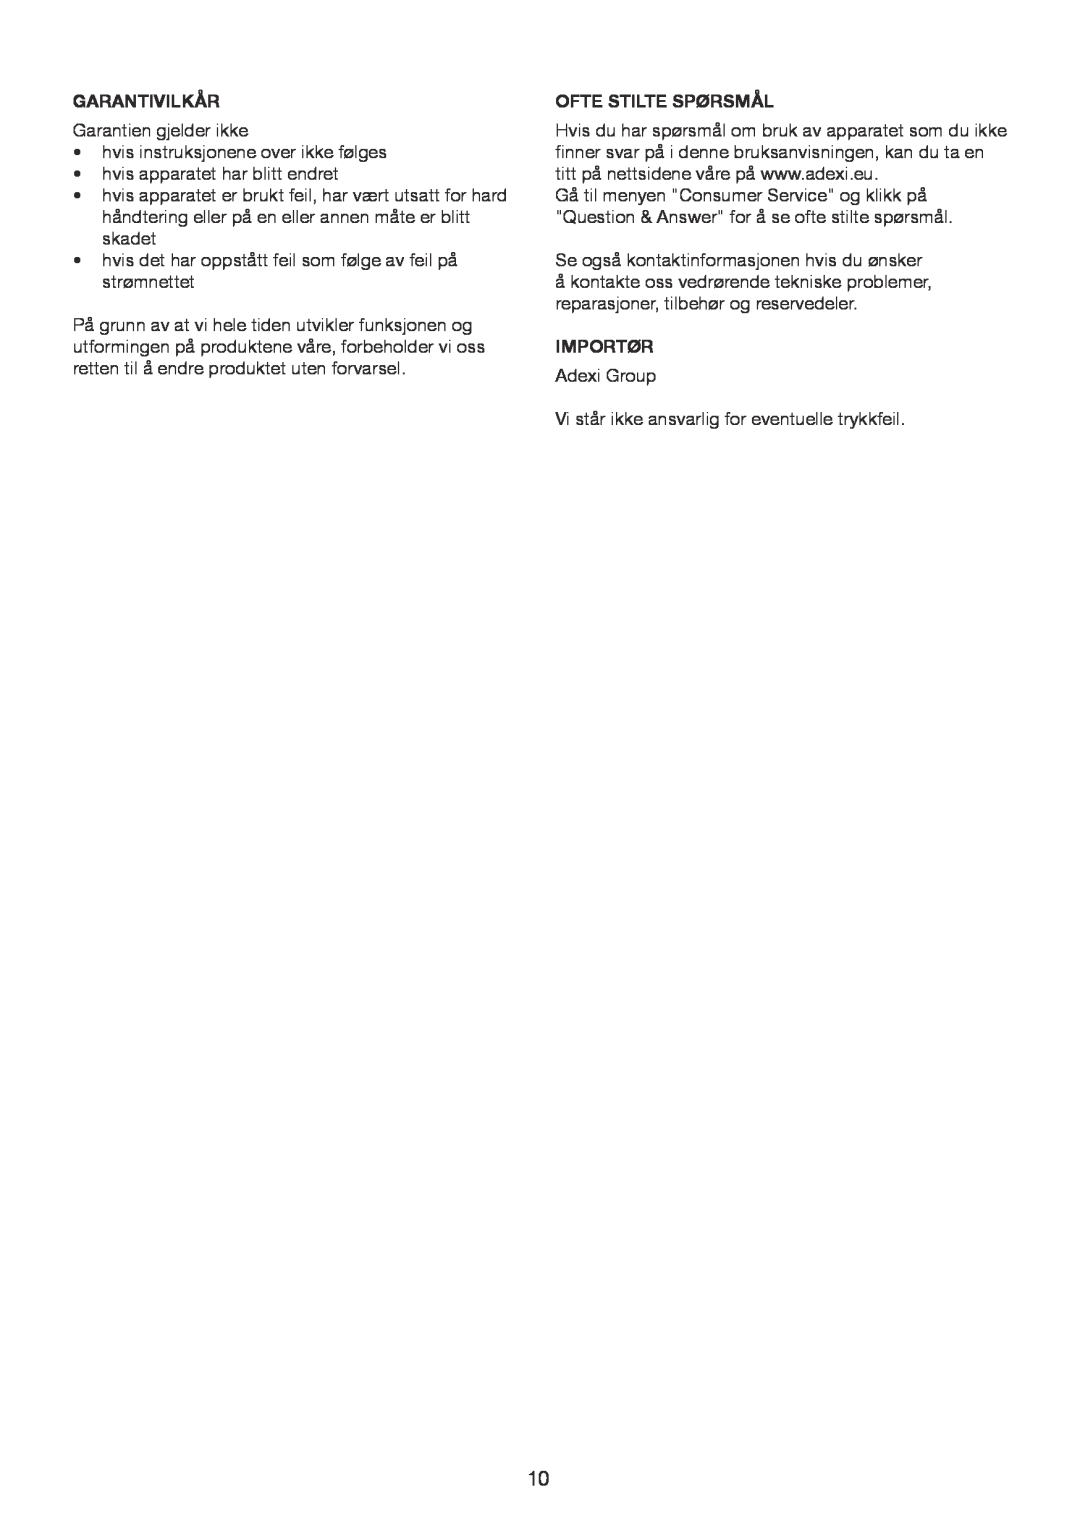 Melissa 246-035 manual Garantivilkår, Ofte Stilte Spørsmål, Importør 